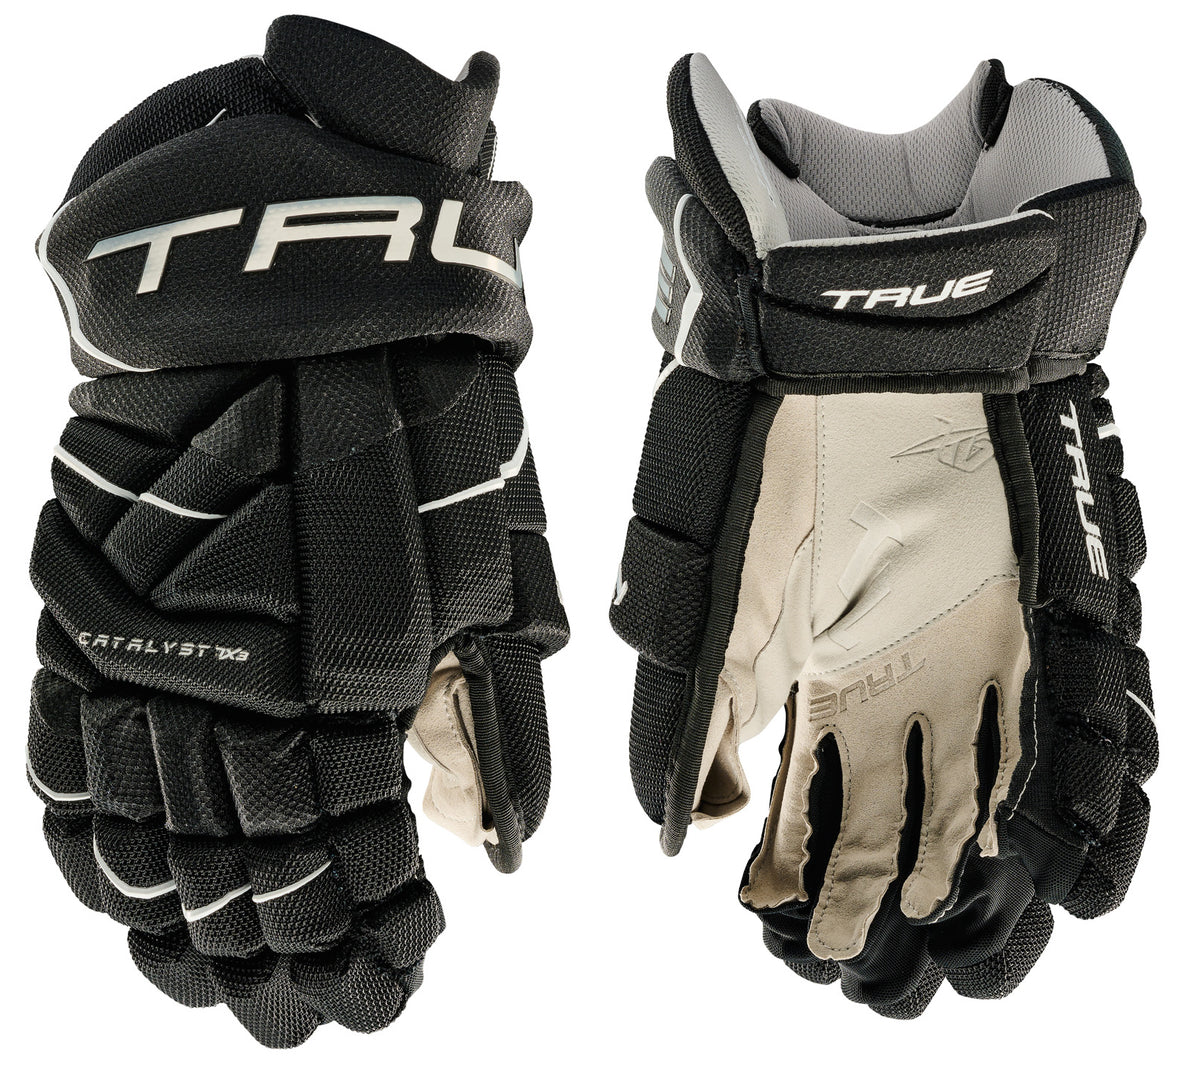 True Catalyst 7X3 Senior Hockey Gloves